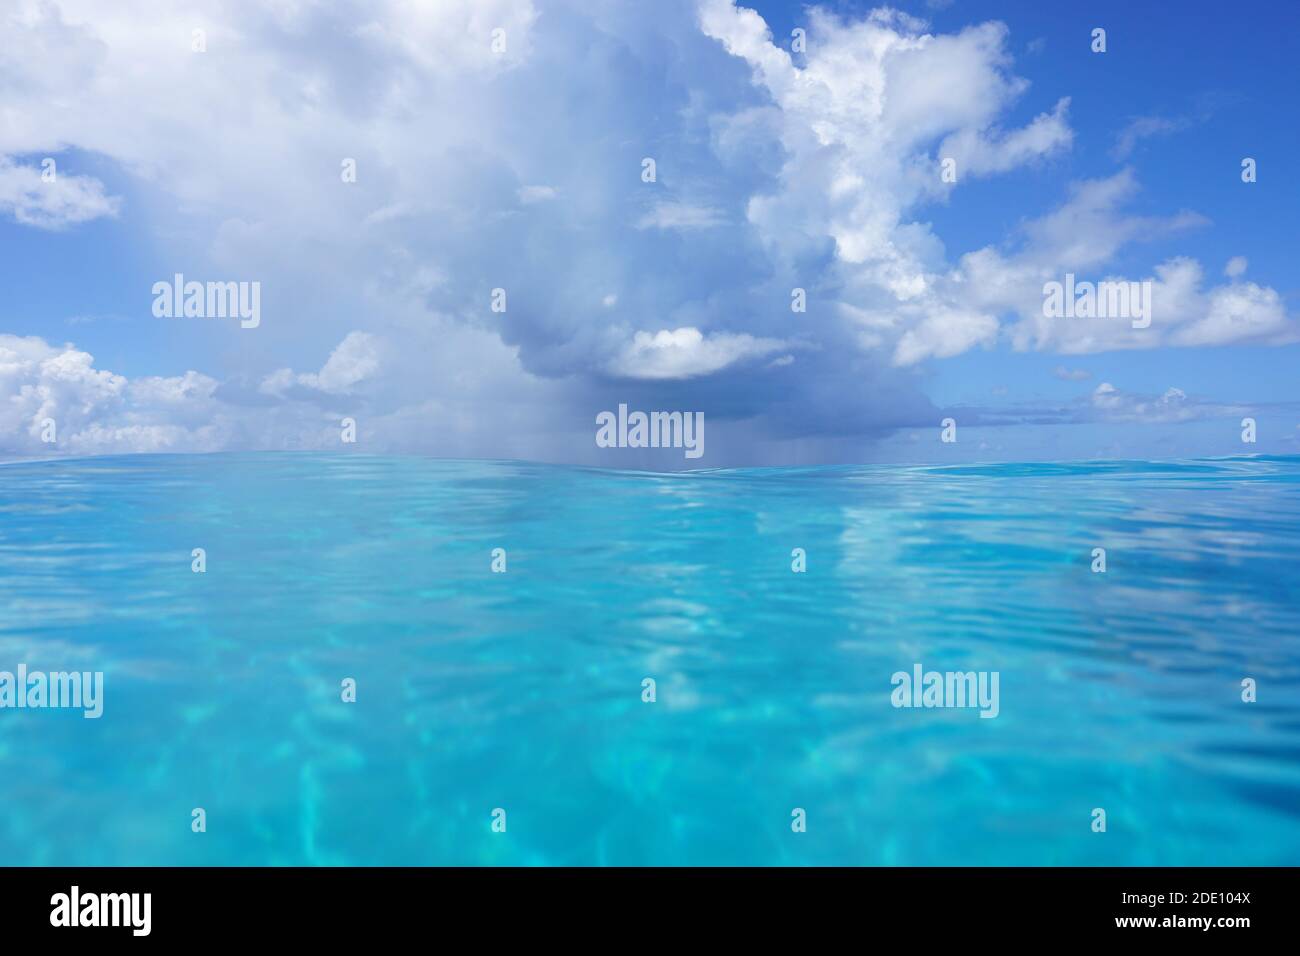 Sfondo marino, cielo blu con nuvole sull'oceano, vista dalla superficie dell'acqua, scena naturale, oceano Pacifico meridionale Foto Stock